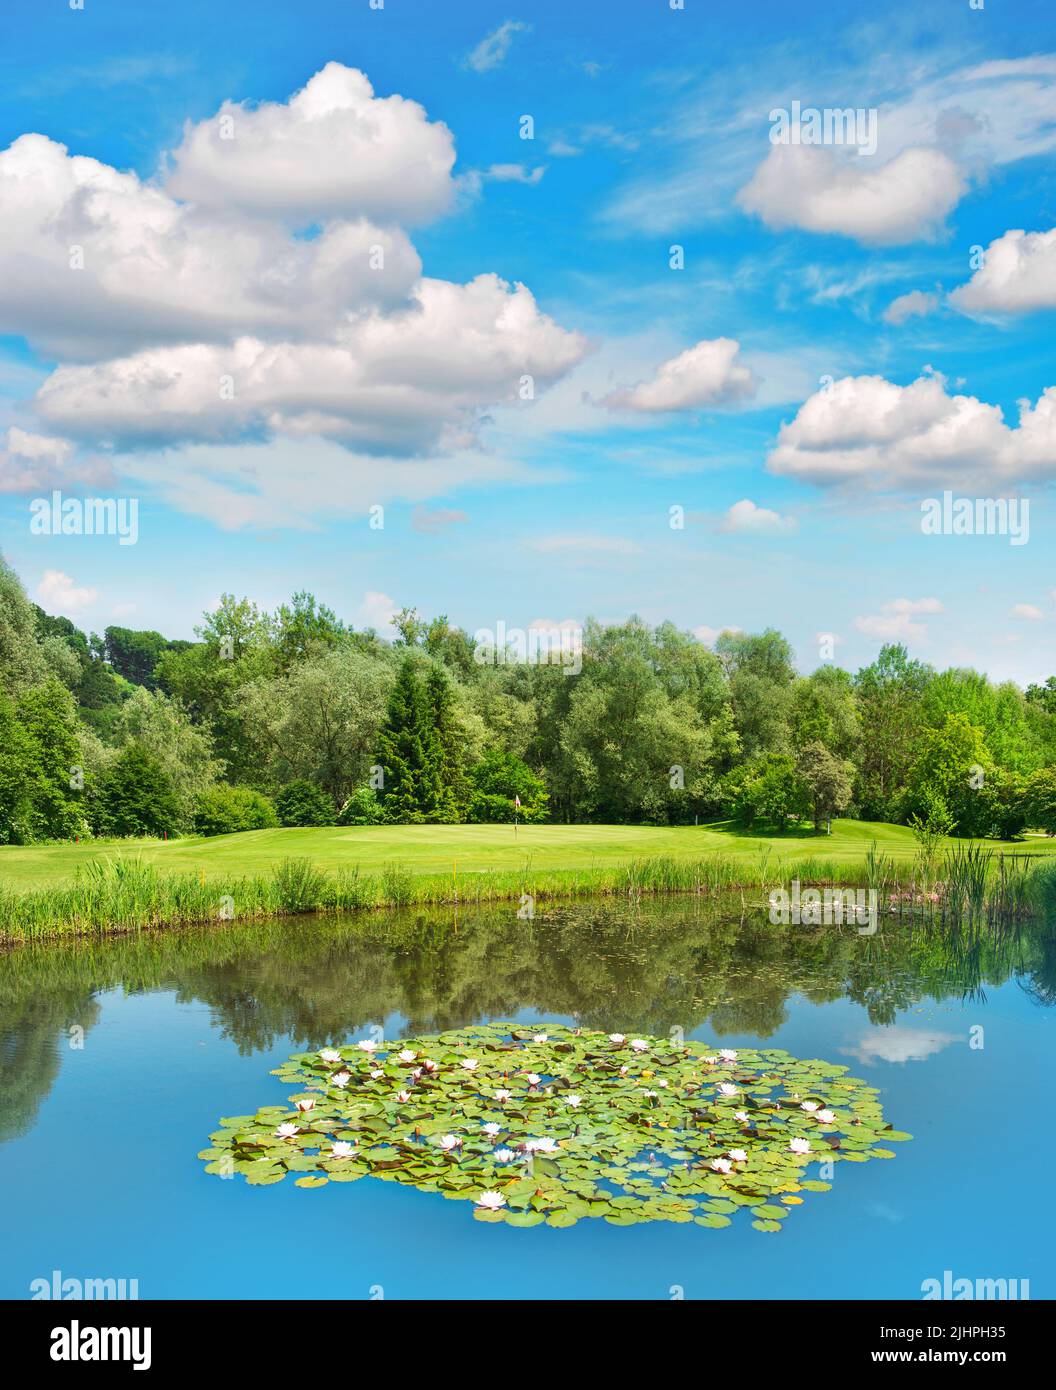 Terrain de golf vert avec lac et beau ciel bleu. Paysage européen Banque D'Images